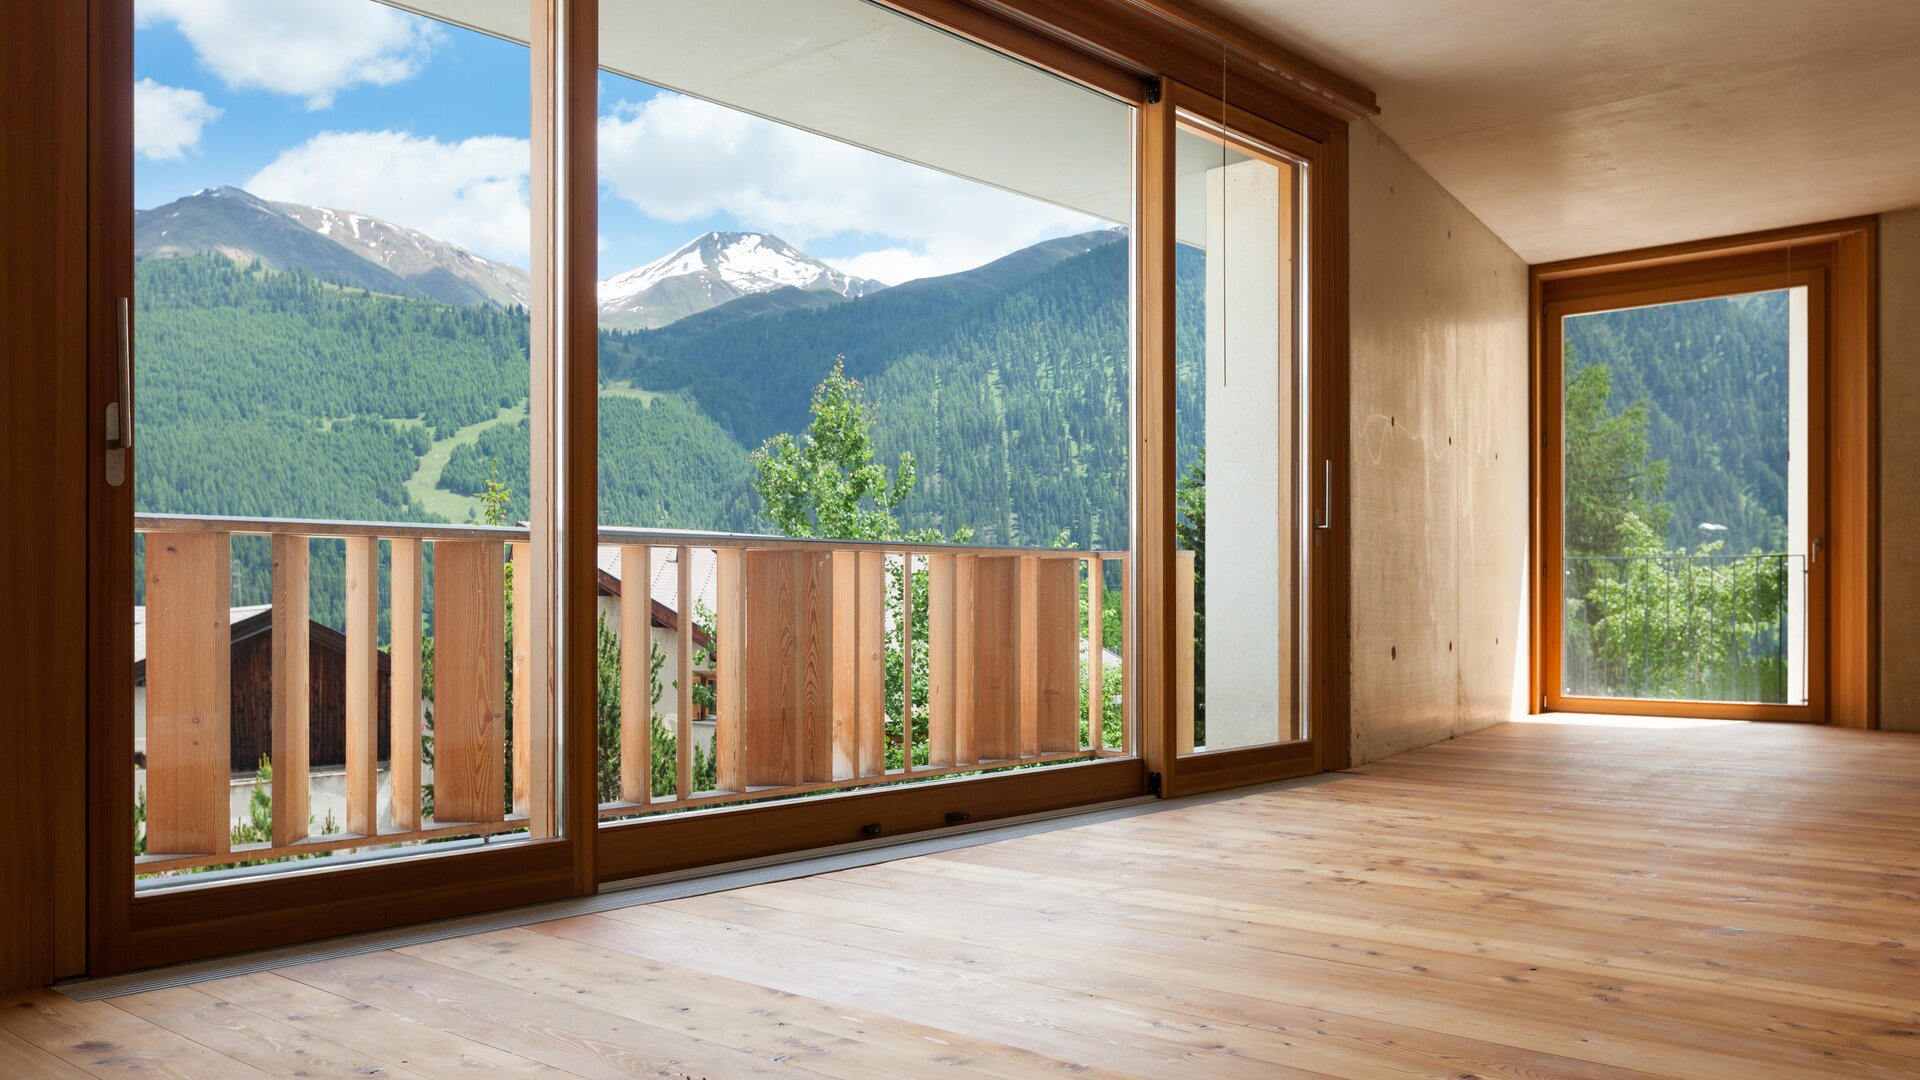 Moderno locale vuoto effetto legno chiaro con grandi finestre in legno e vista nella natura.